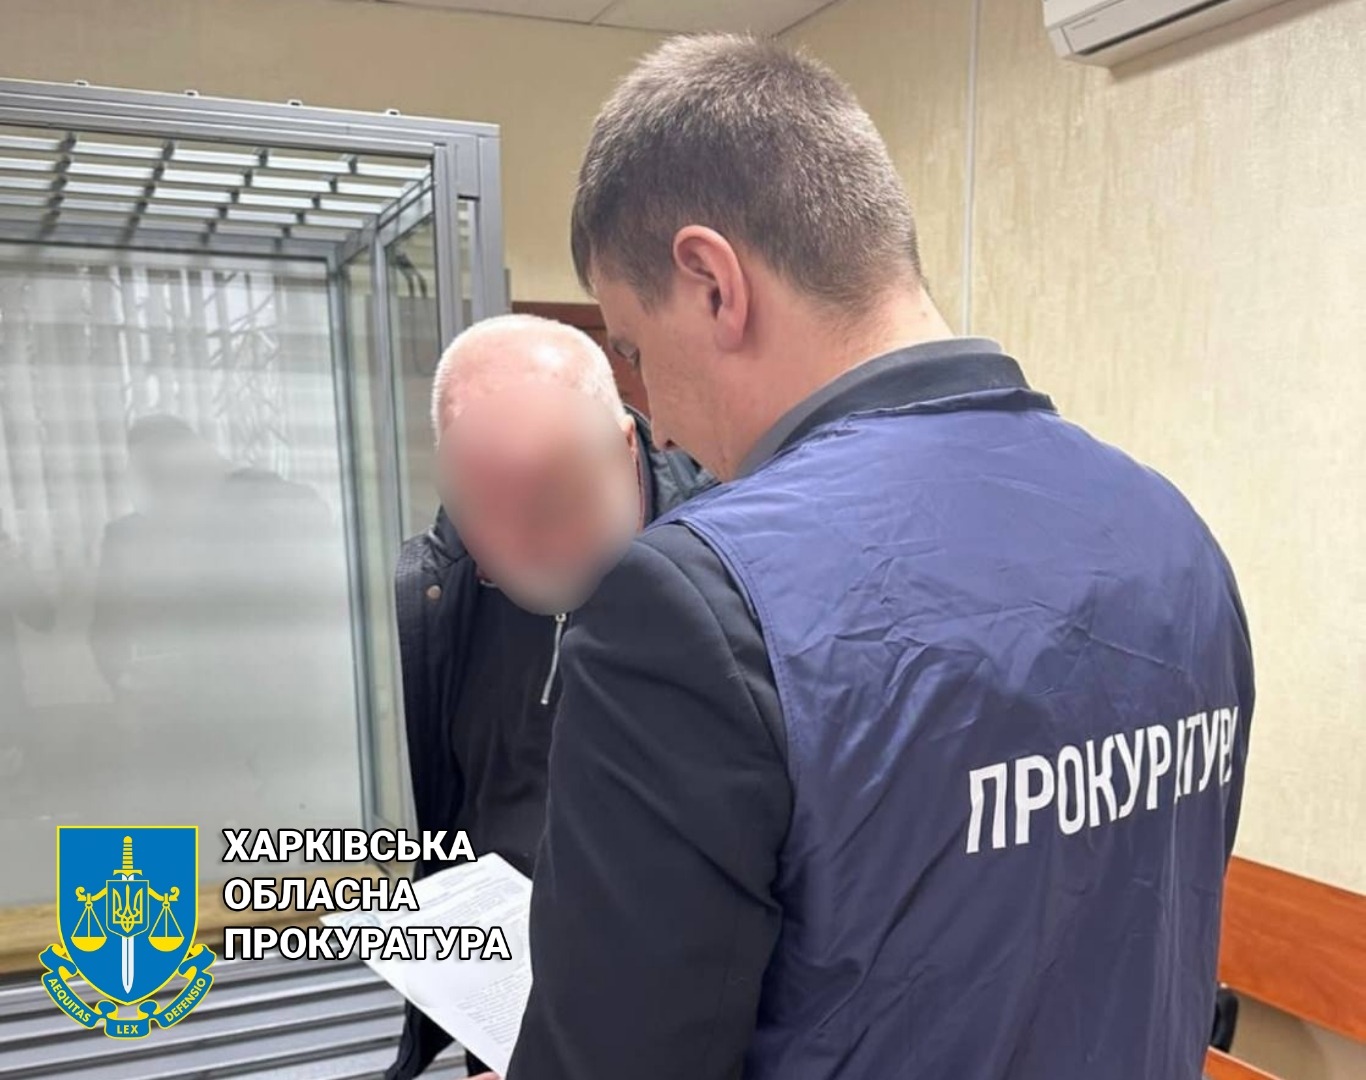 Харків’янин збирав дані про ЗСУ та СБУ для російської спецслужби